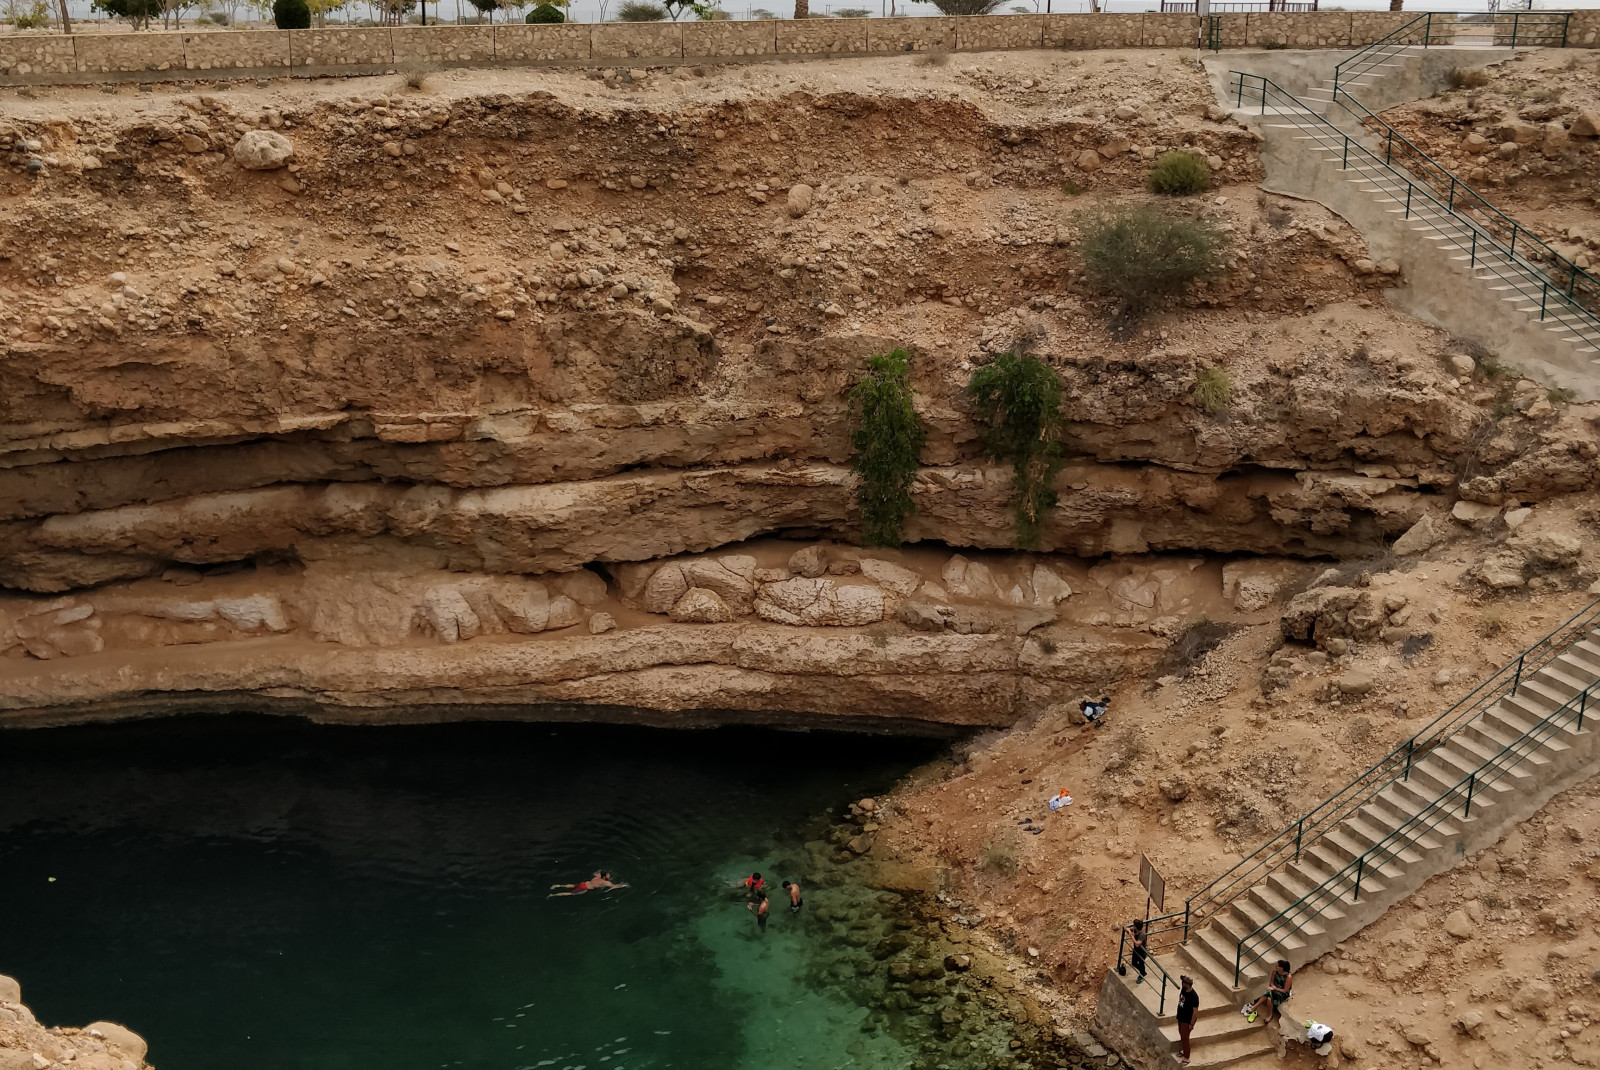 The Bimmah Sinkhole in Oman